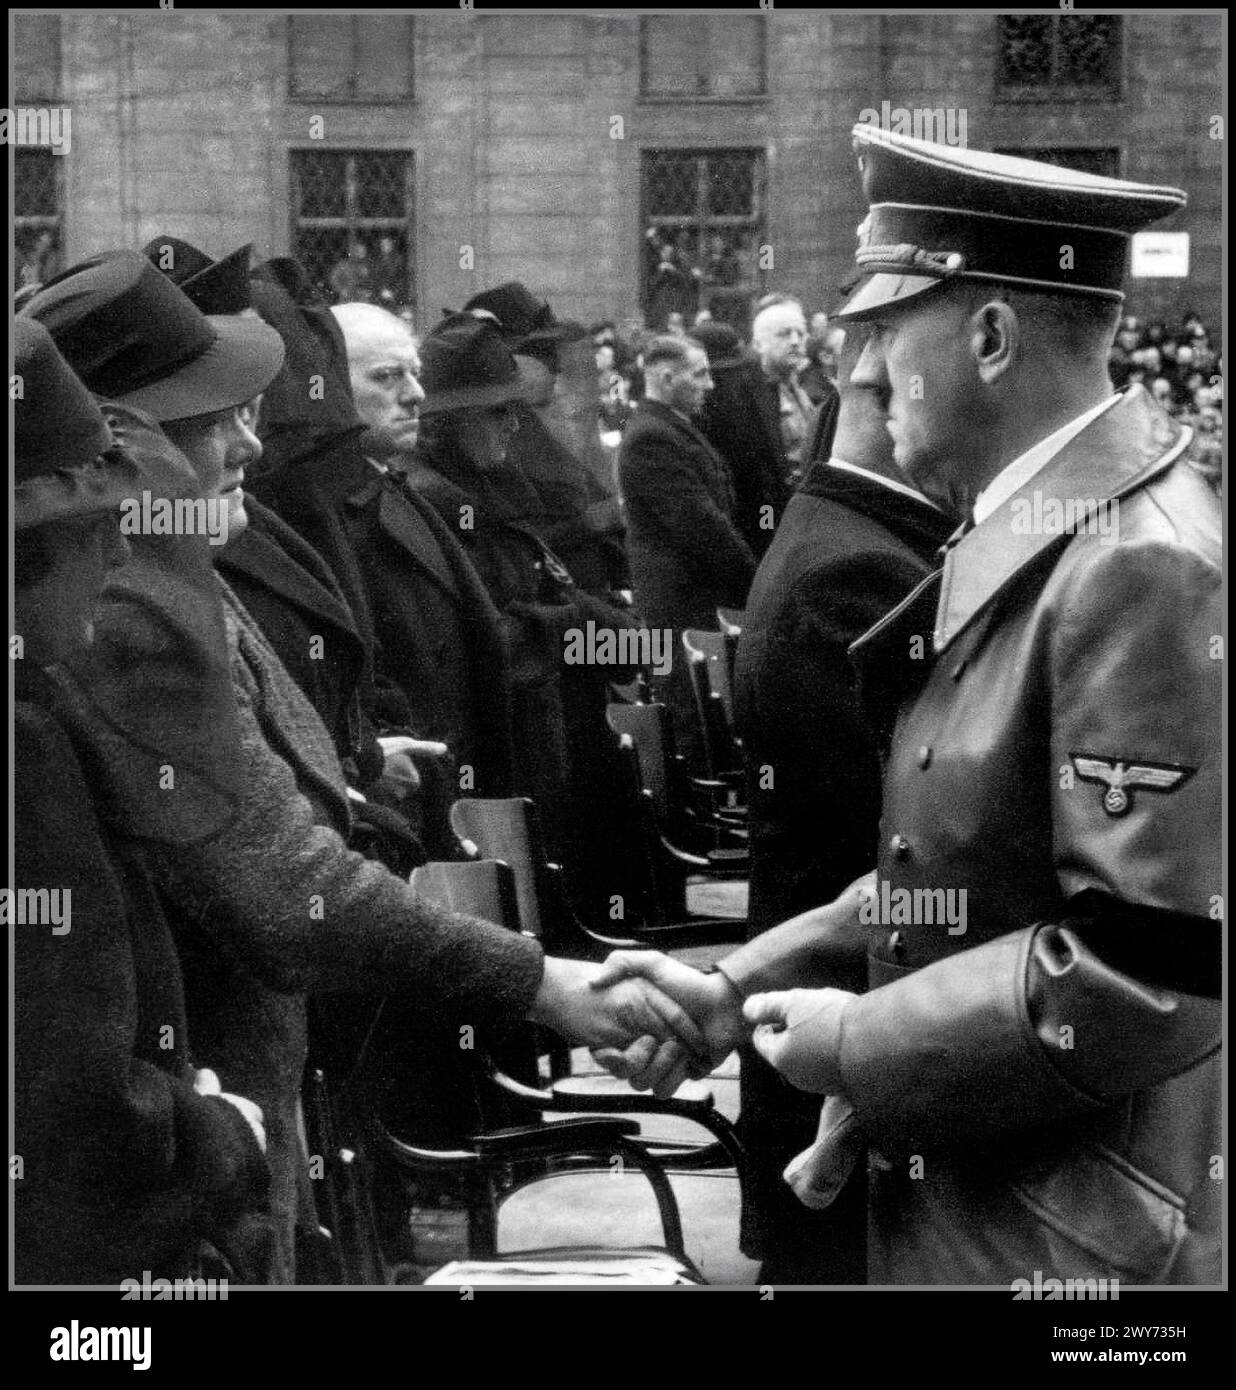 Adolf Hitler mit schwarzem Armband spricht den Familien der bei der Explosion im Münchner Bürgerbräukeller Getöteten sein Beileid aus. 1939 Nazi-Deutschland. Johann Georg Elser 4. Januar 1903 – 9. April 1945) war ein deutscher Arbeiter, der am 8. November 1939 einen aufwändigen Mordanschlag auf Adolf Hitler und andere hochrangige Nazi-Führer auf dem Bürgerbräukeller in München plante und durchführte. Elser baute und platzierte eine Bombe in der Nähe des Bahnsteigs, von dem Hitler eine Rede halten sollte. Es hat Hitler nicht getötet Stockfoto